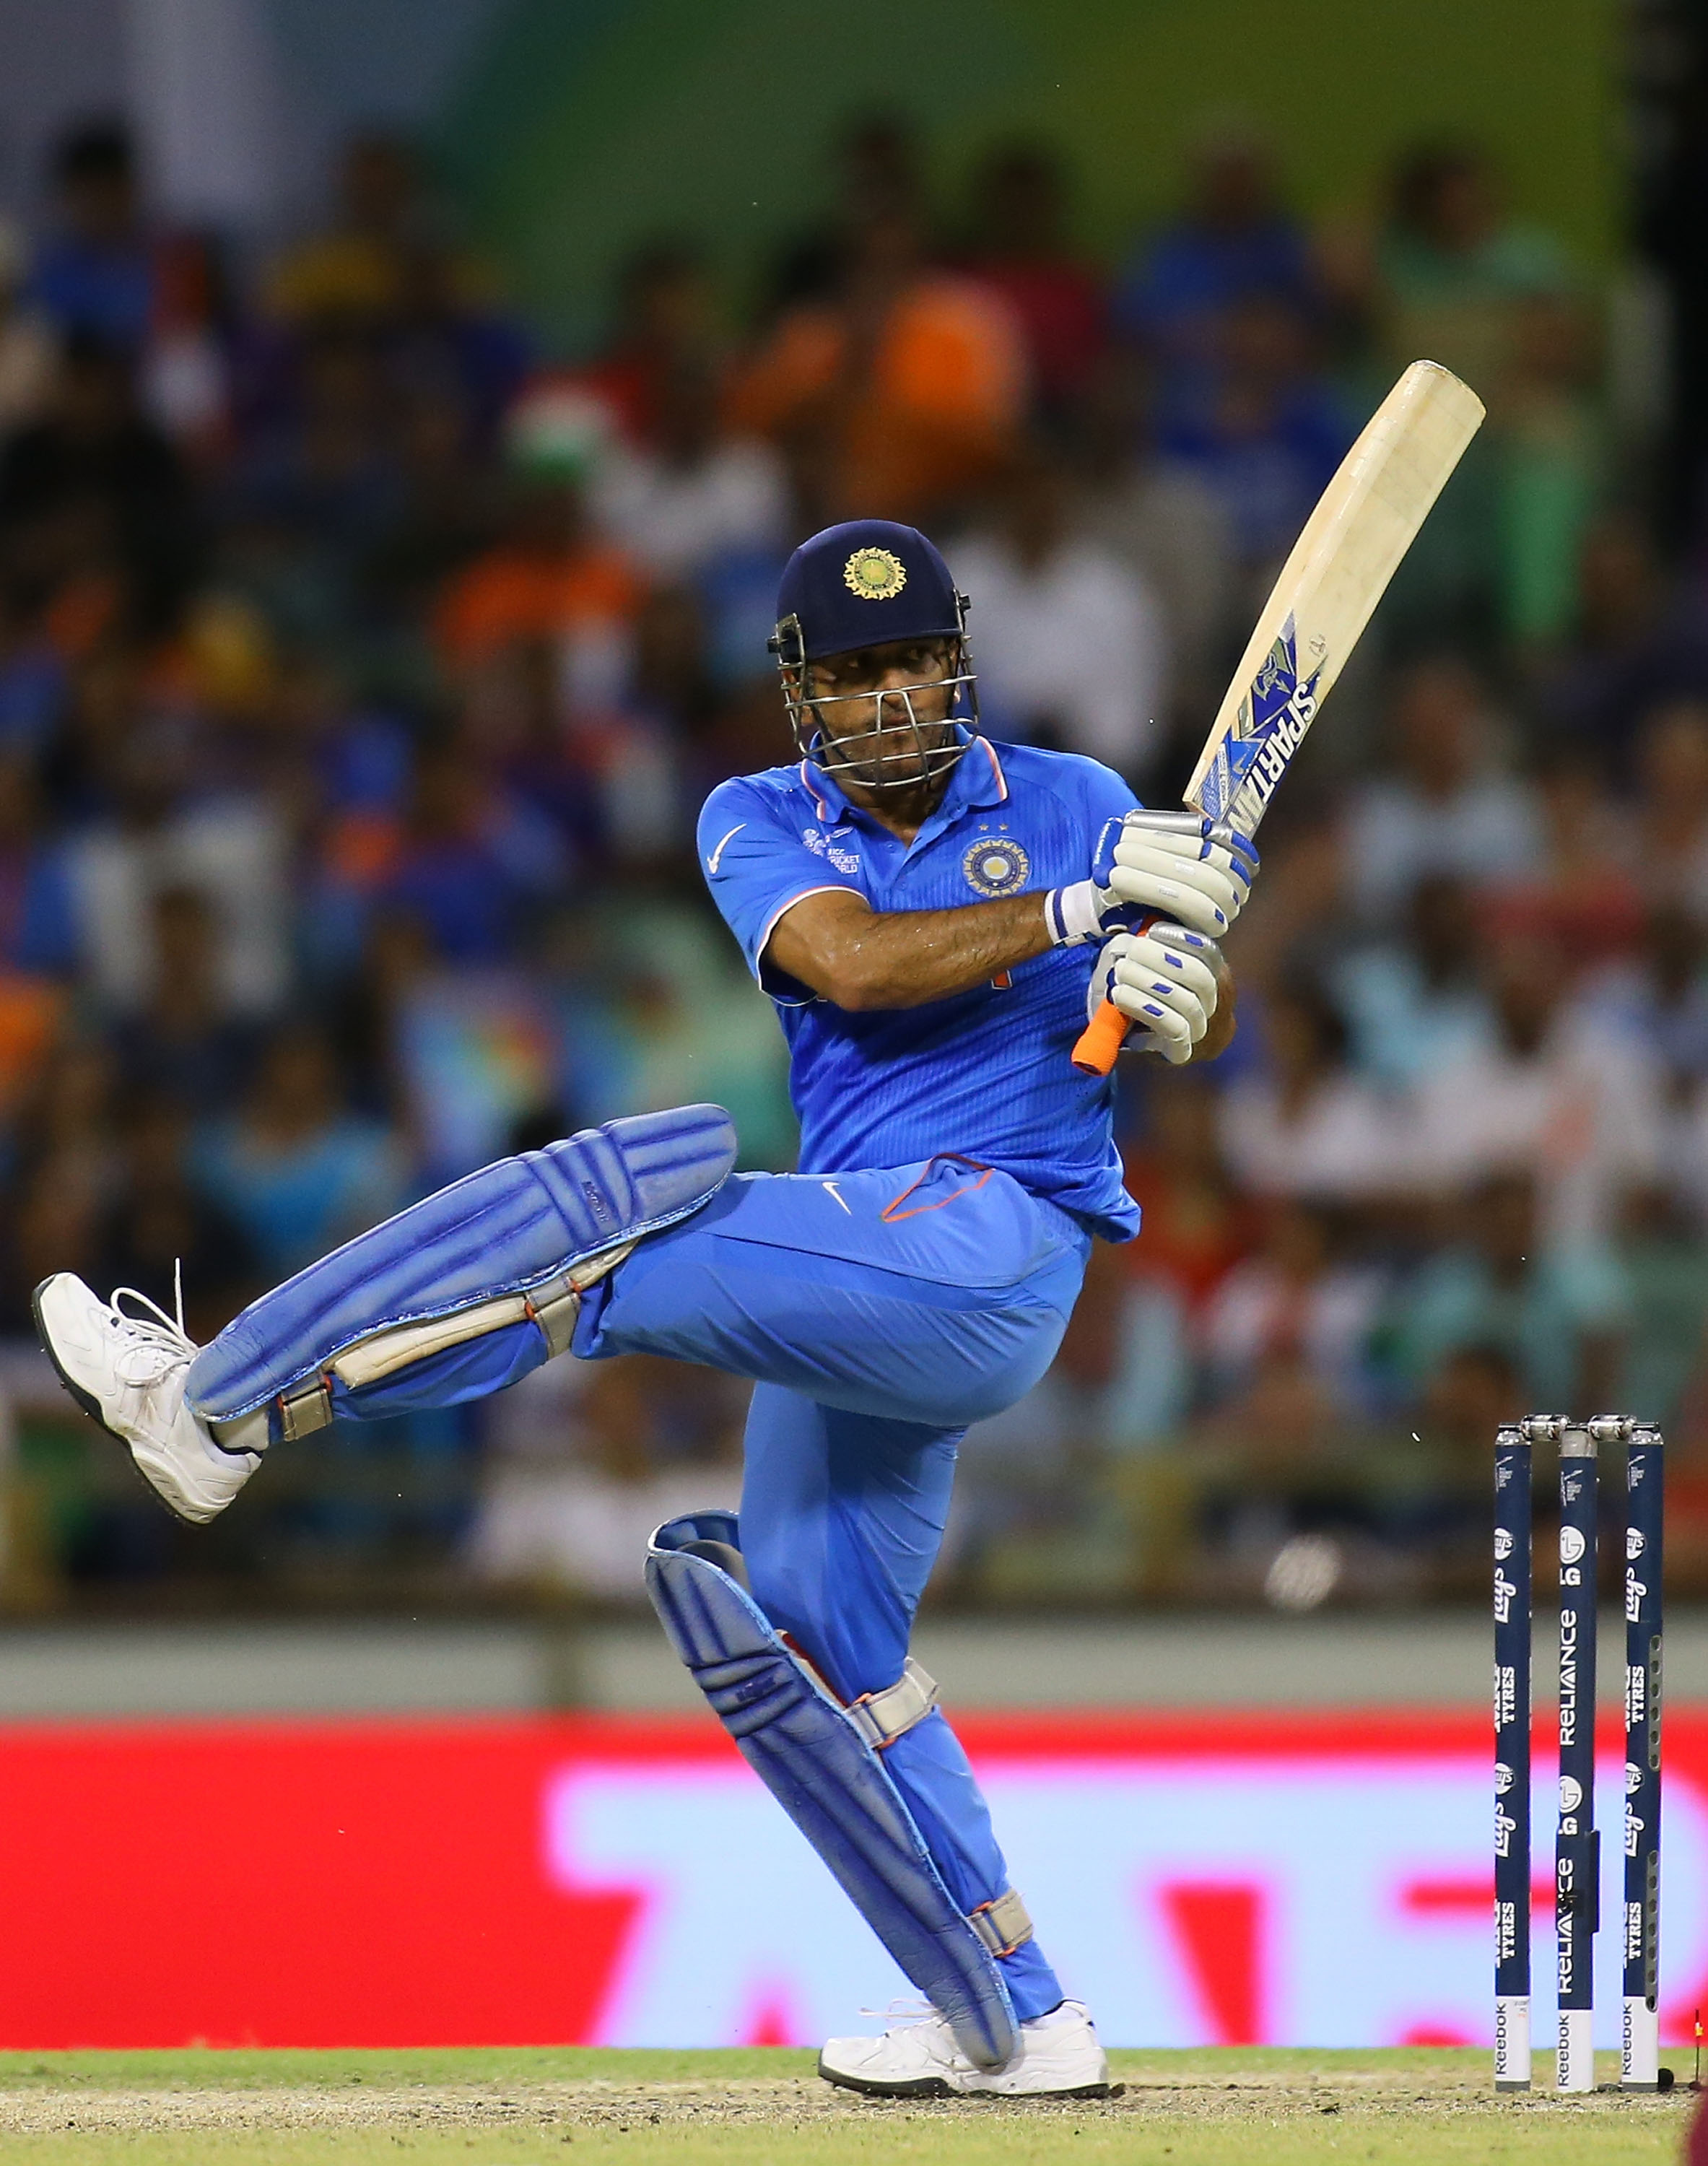 वनडे वर्ल्ड कप के एक सीजन में बतौर कप्तान सबसे ज्यादा छक्के लगाने वाले भारतीय खिलाड़ियों की लिस्ट 